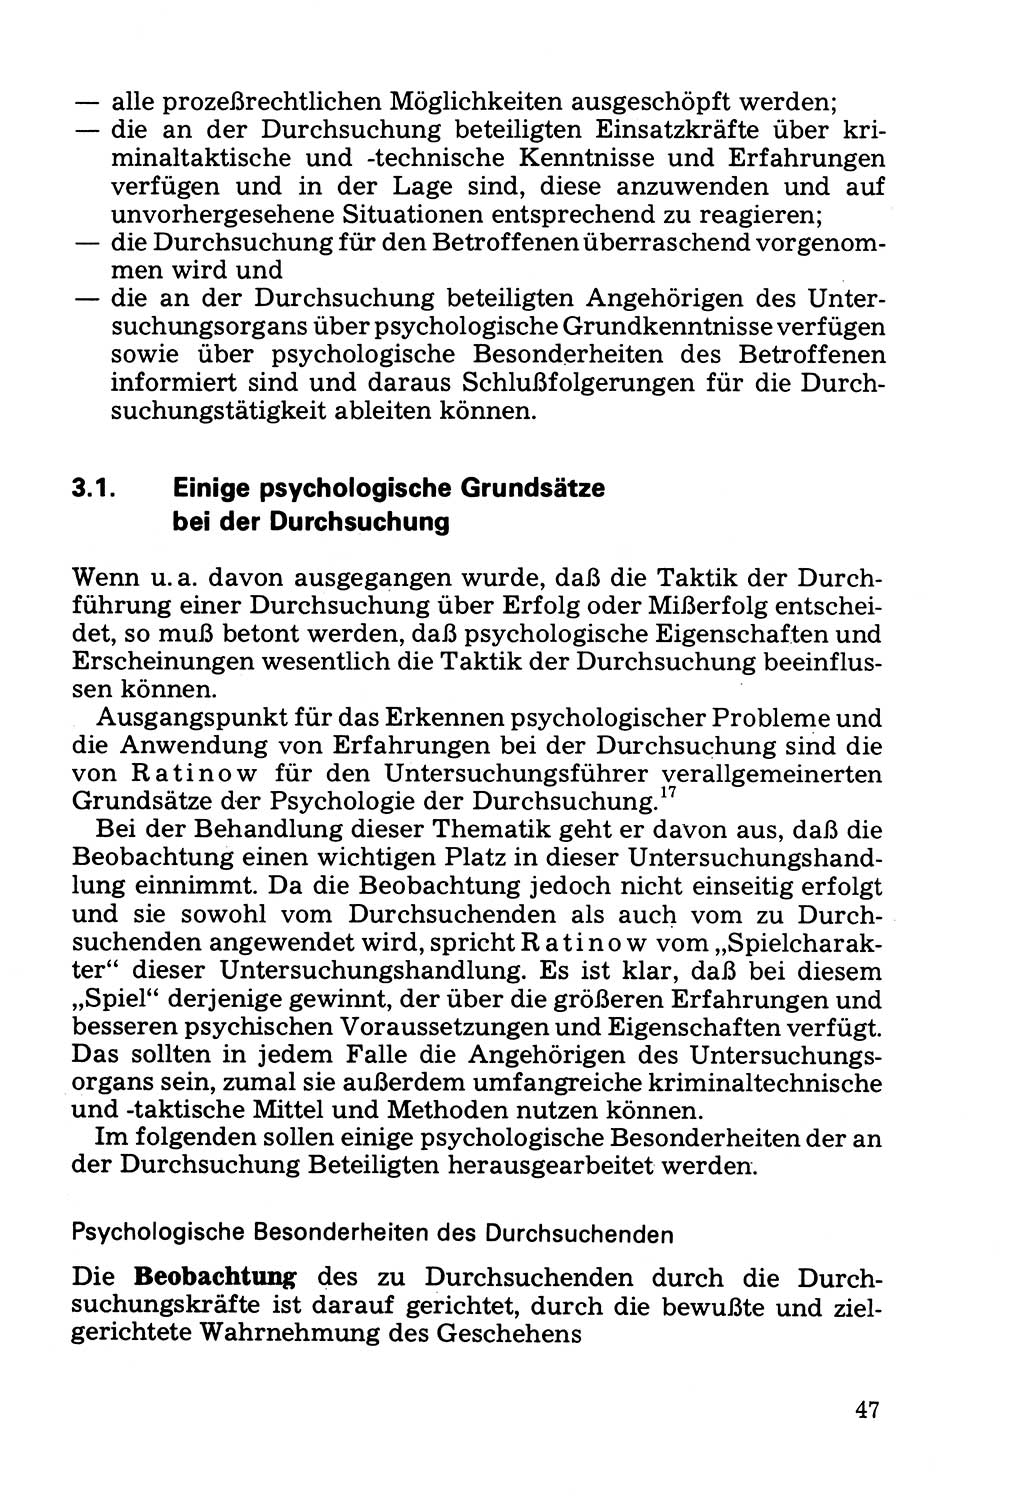 Die Durchsuchung und die Beschlagnahme [Deutsche Demokratische Republik (DDR)] 1979, Seite 47 (Durchs. Beschl. DDR 1979, S. 47)